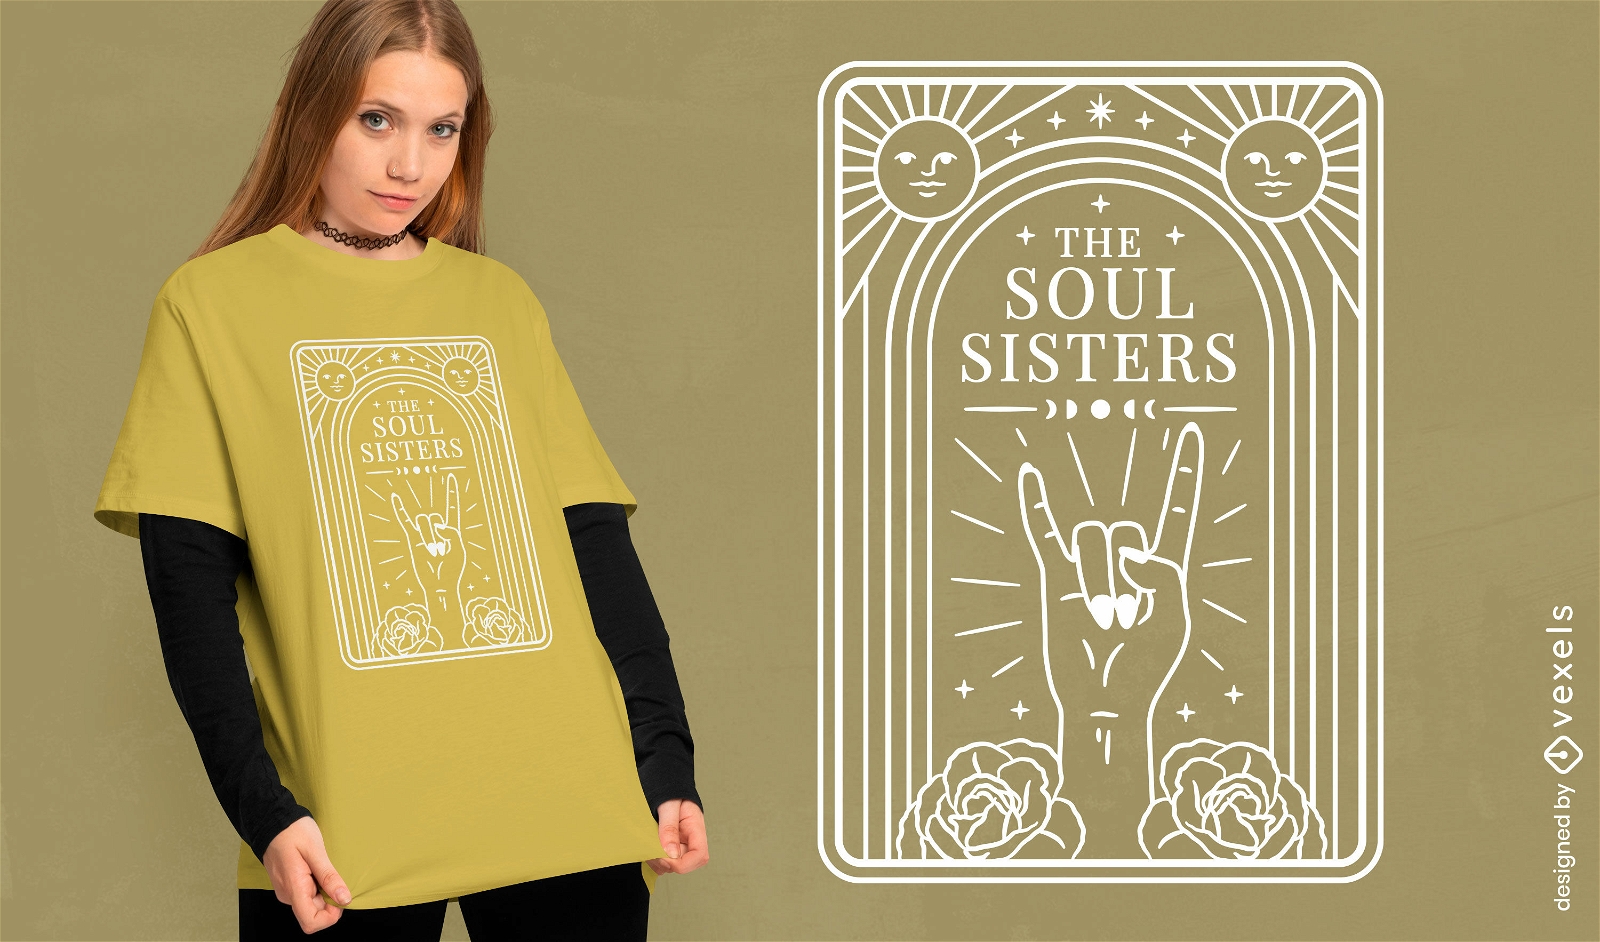 Mystical sisterhood t-shirt design